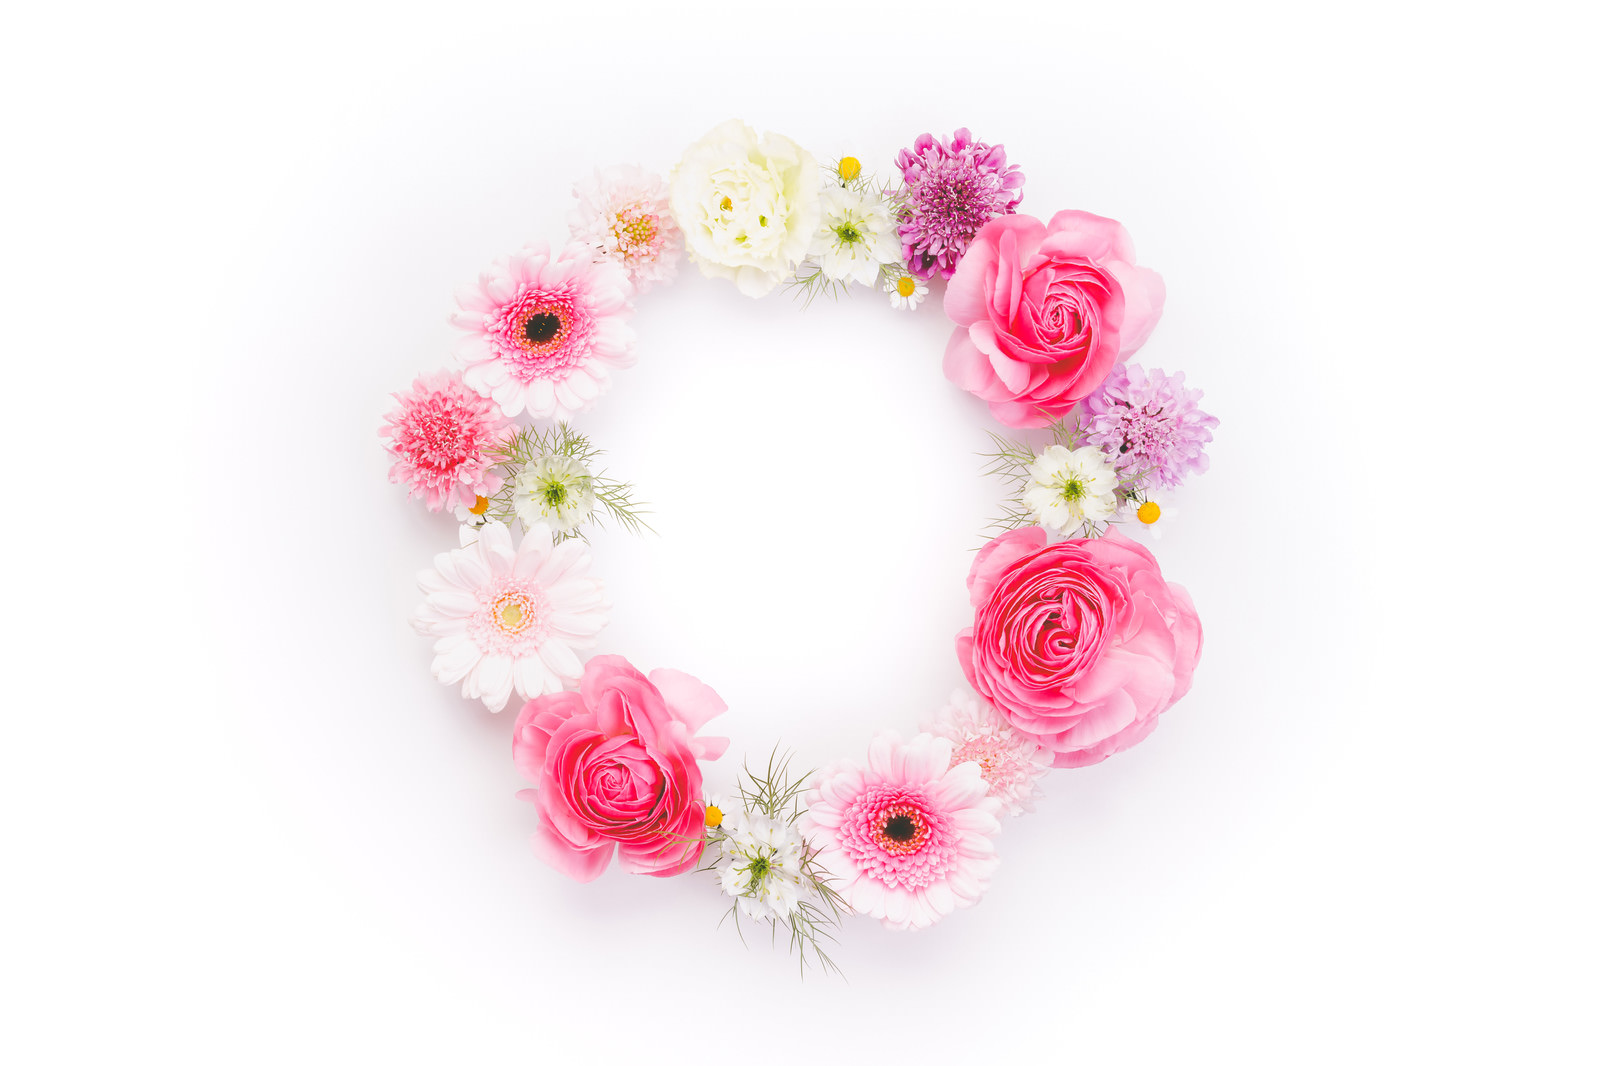 「丸いお花の輪」の写真